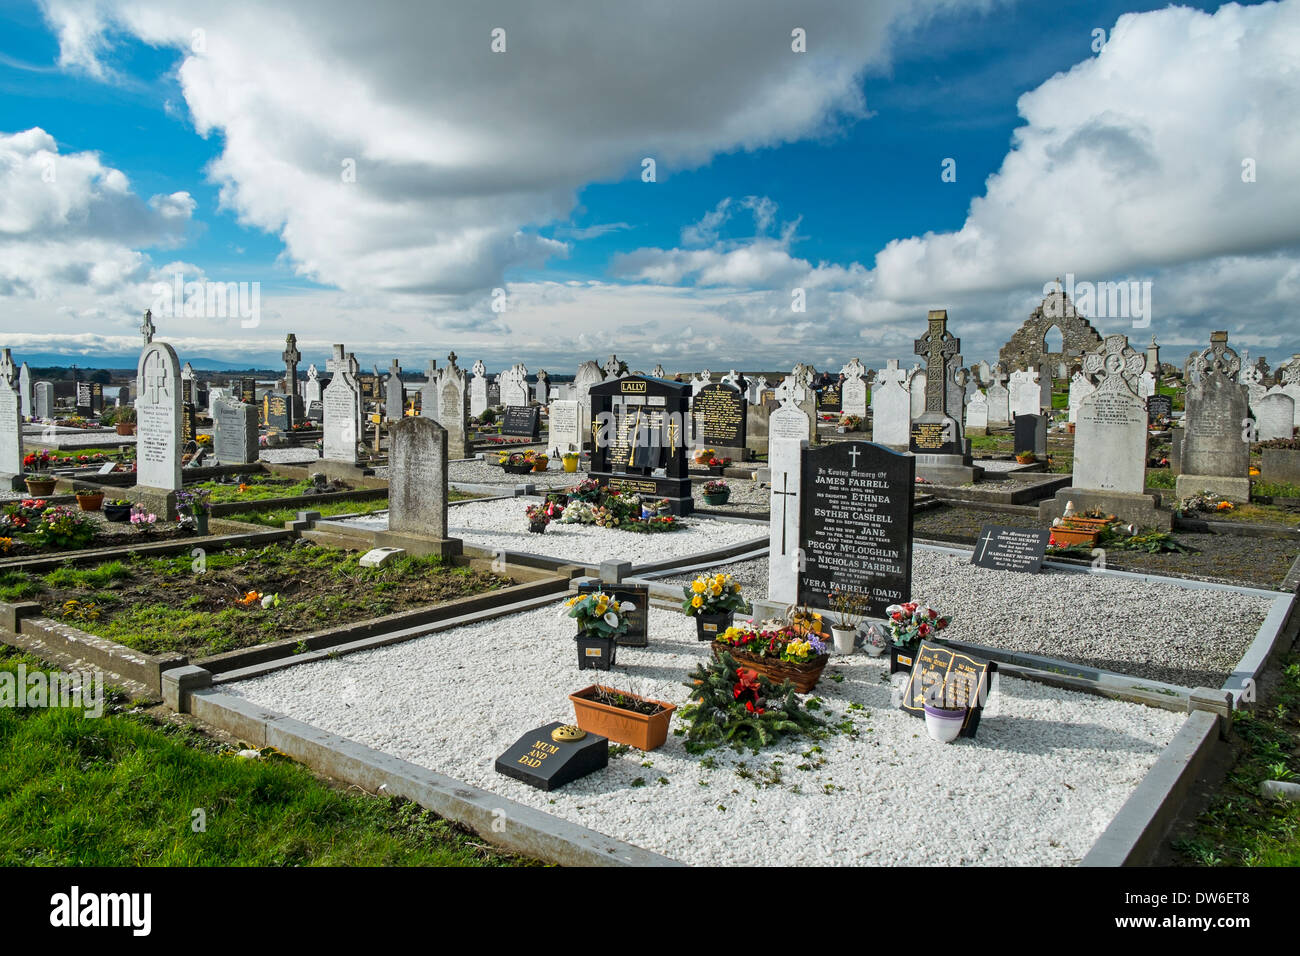 Cemetery at Rush county Dublin Ireland Stock Photo